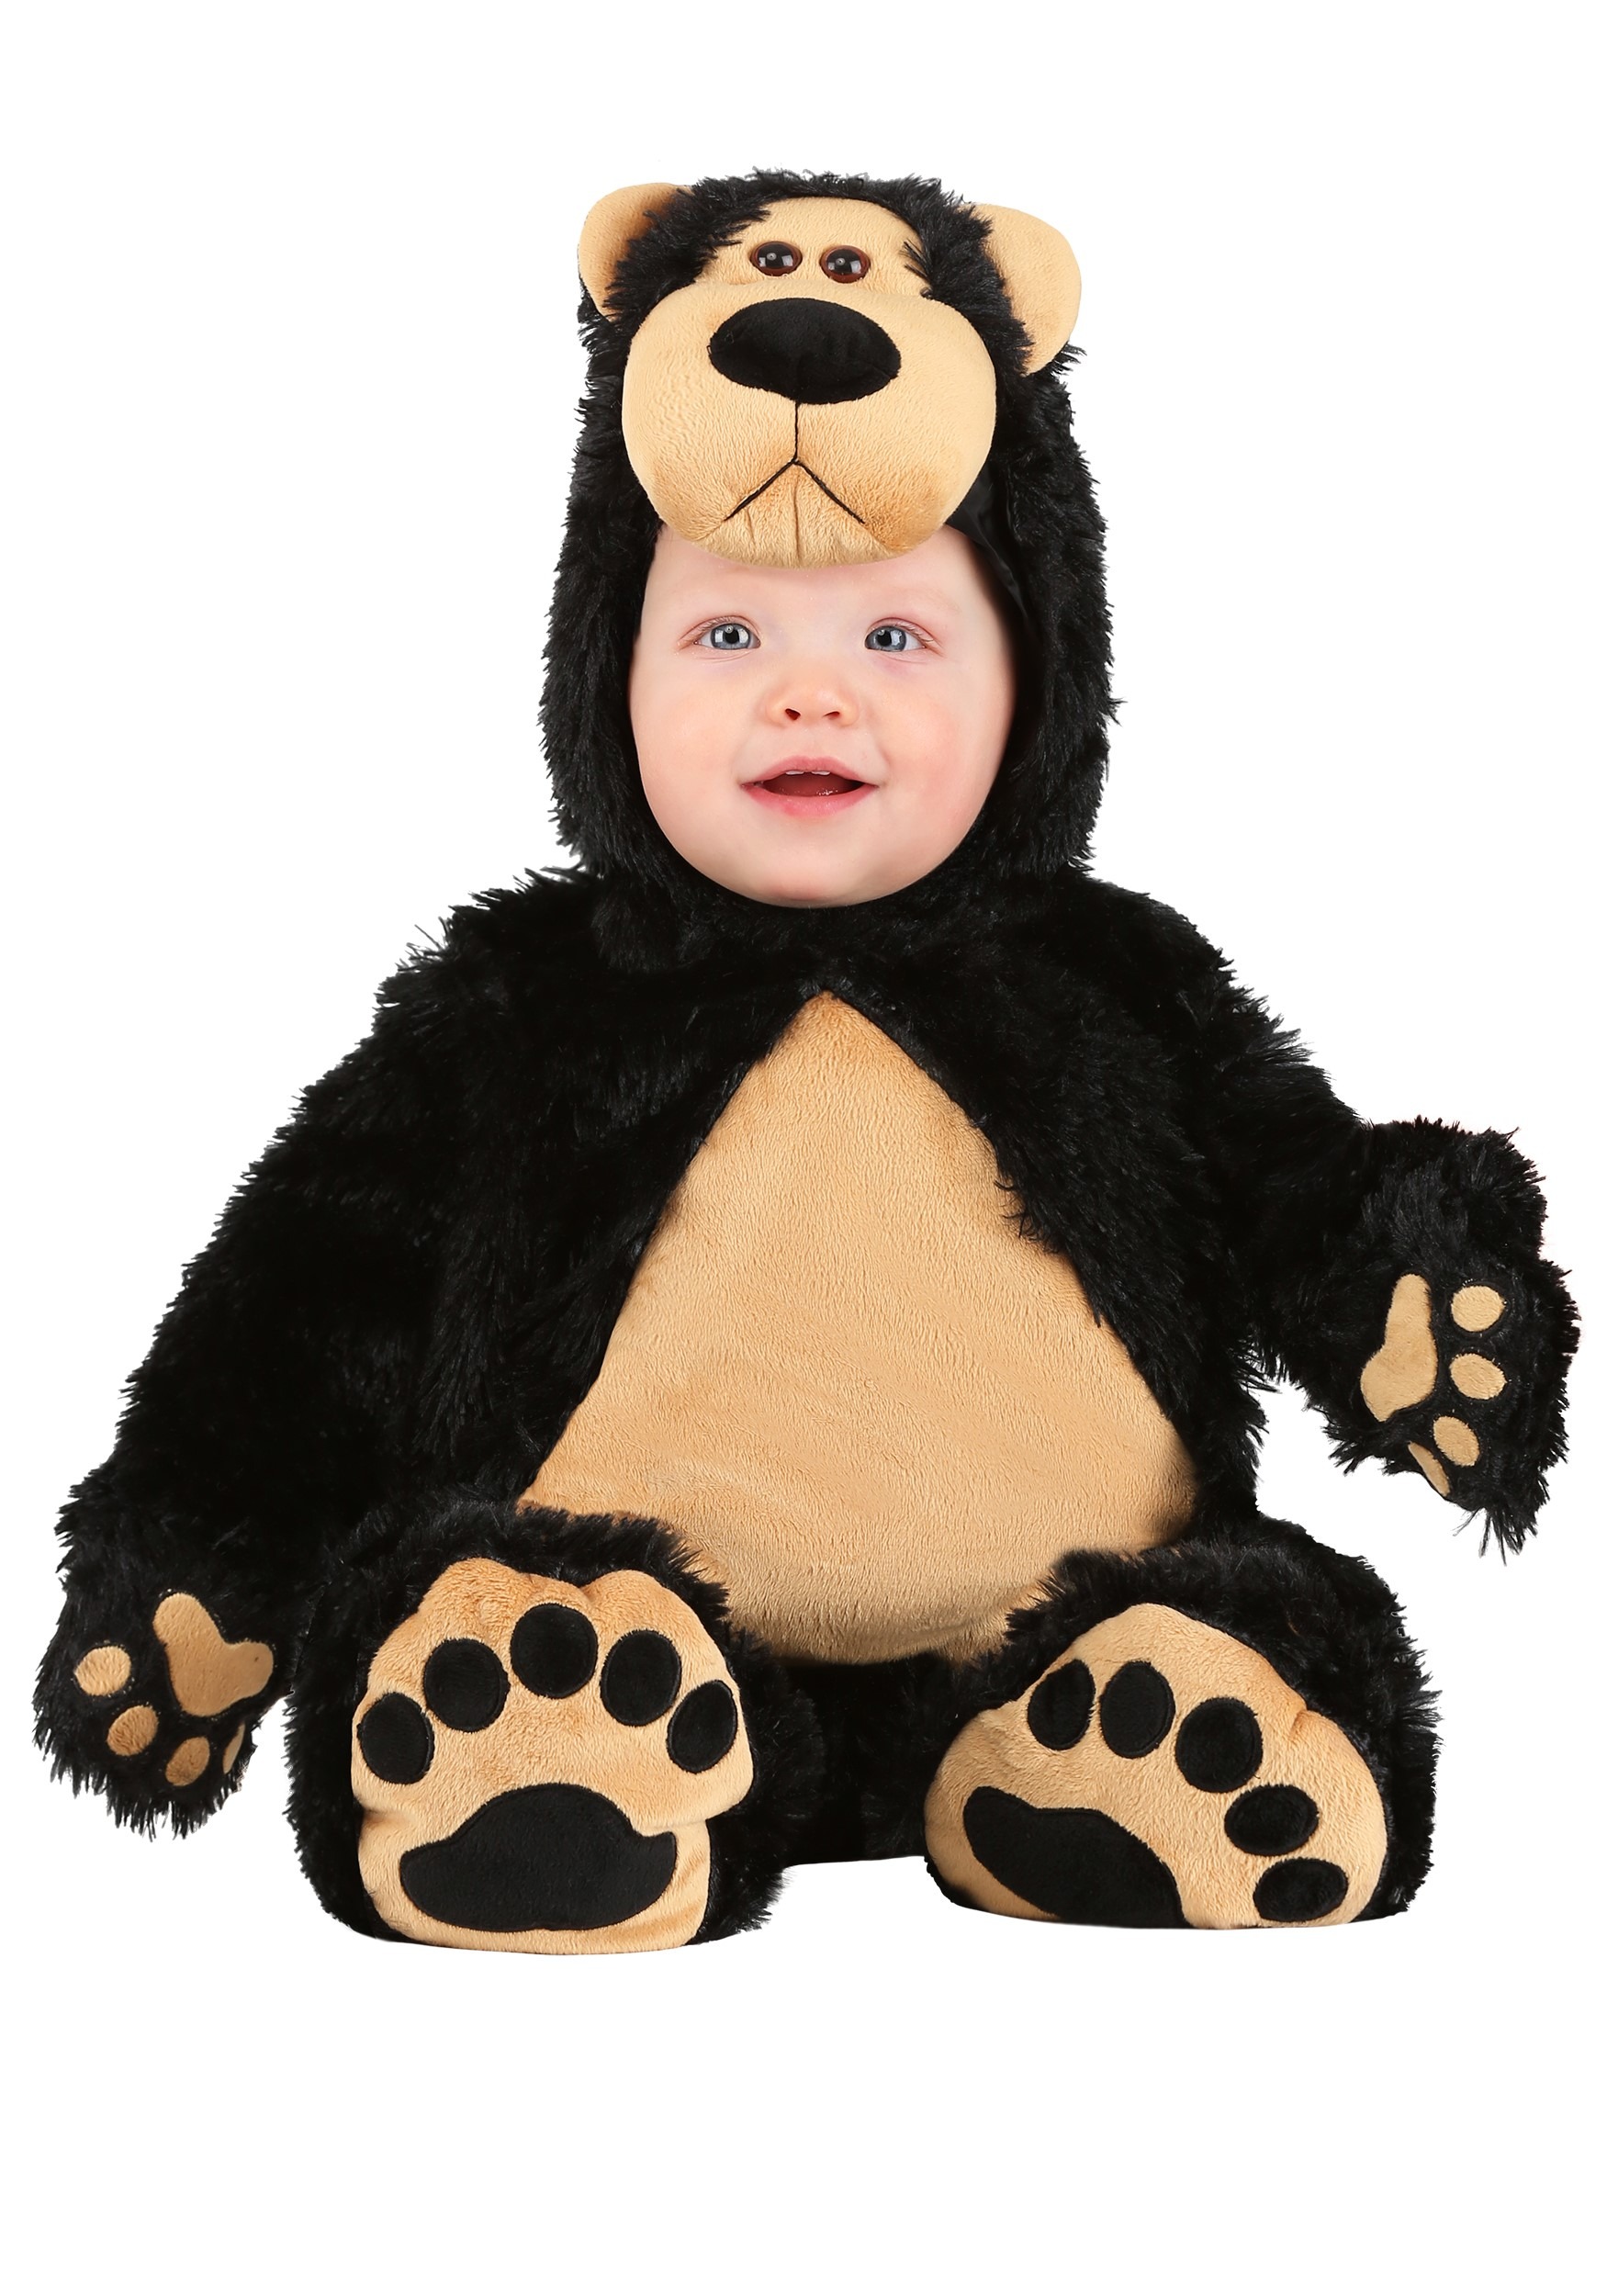 Bear Costume for Infants